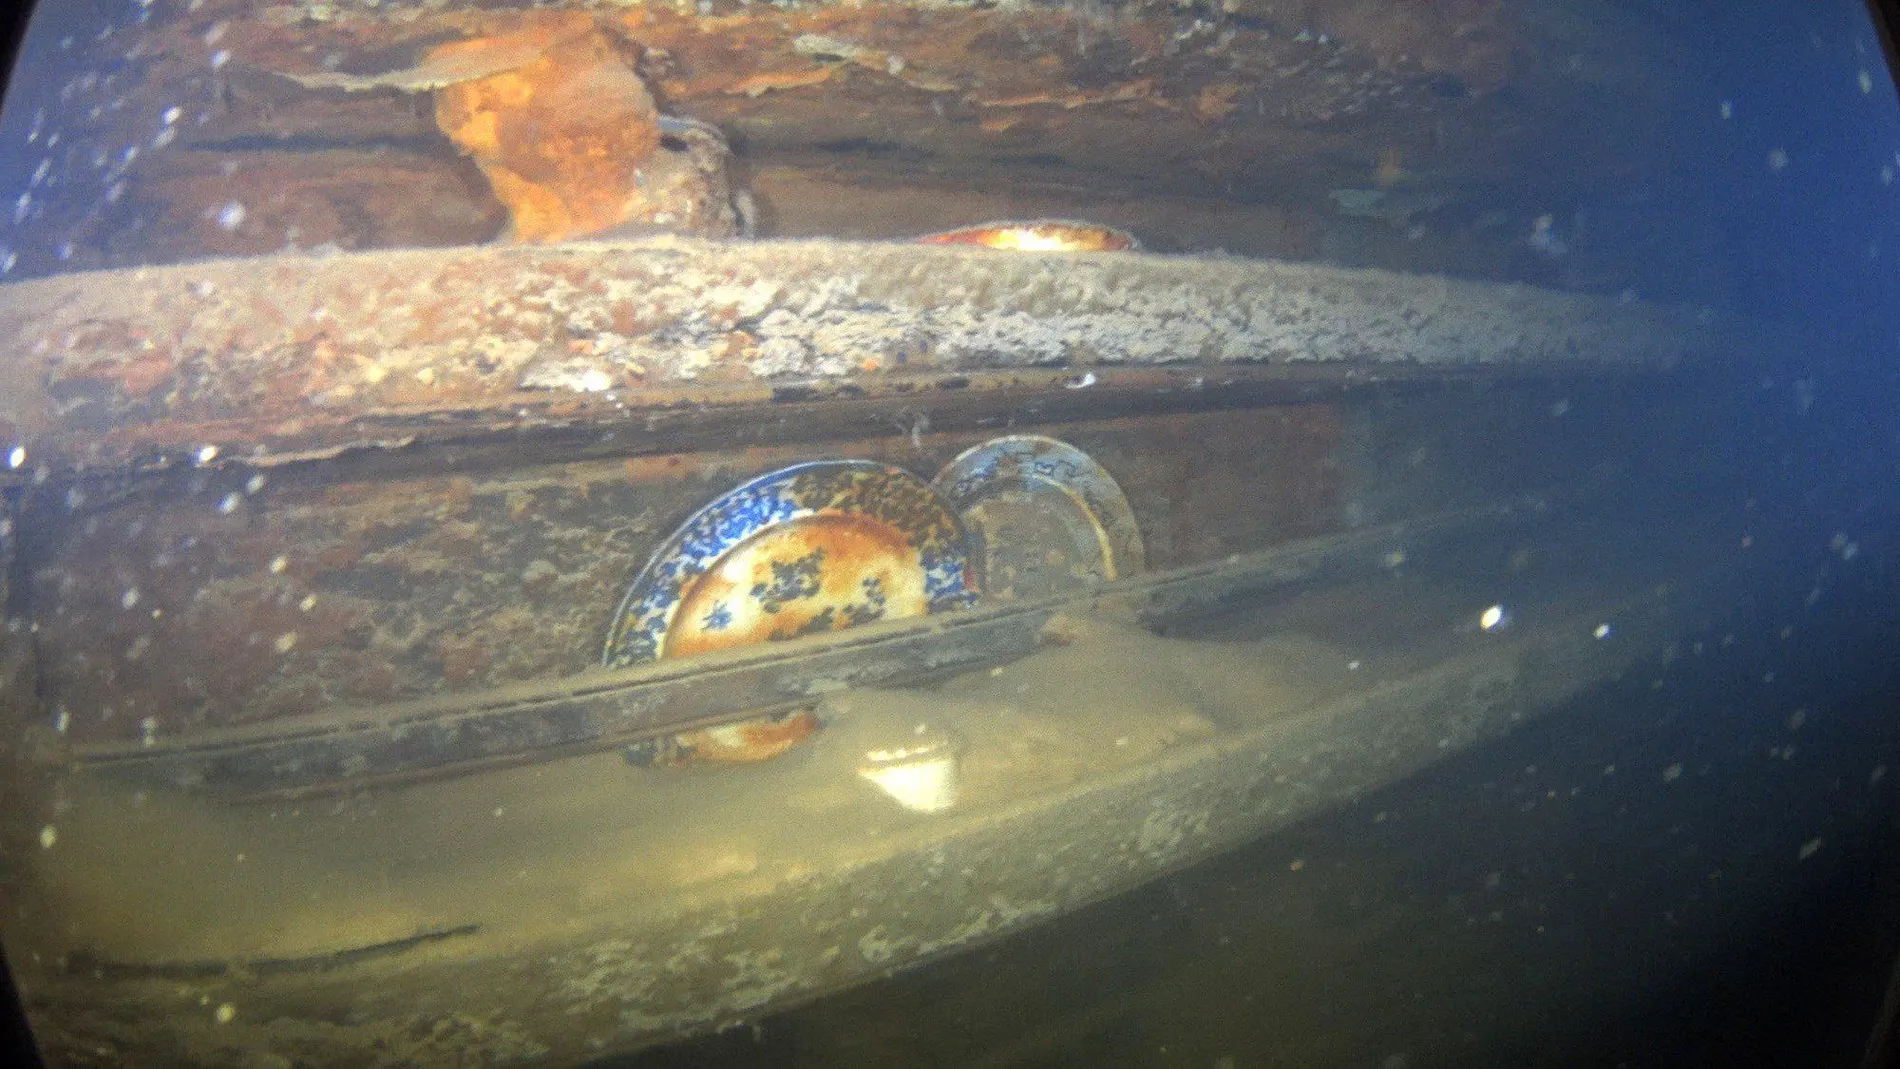 Fotografía cedida por el servicio de Parques de Canadá donde se muestran unos platos y otros artefactos en estantes al lado de una mesa de comedor en el interior del navío HMS Terror